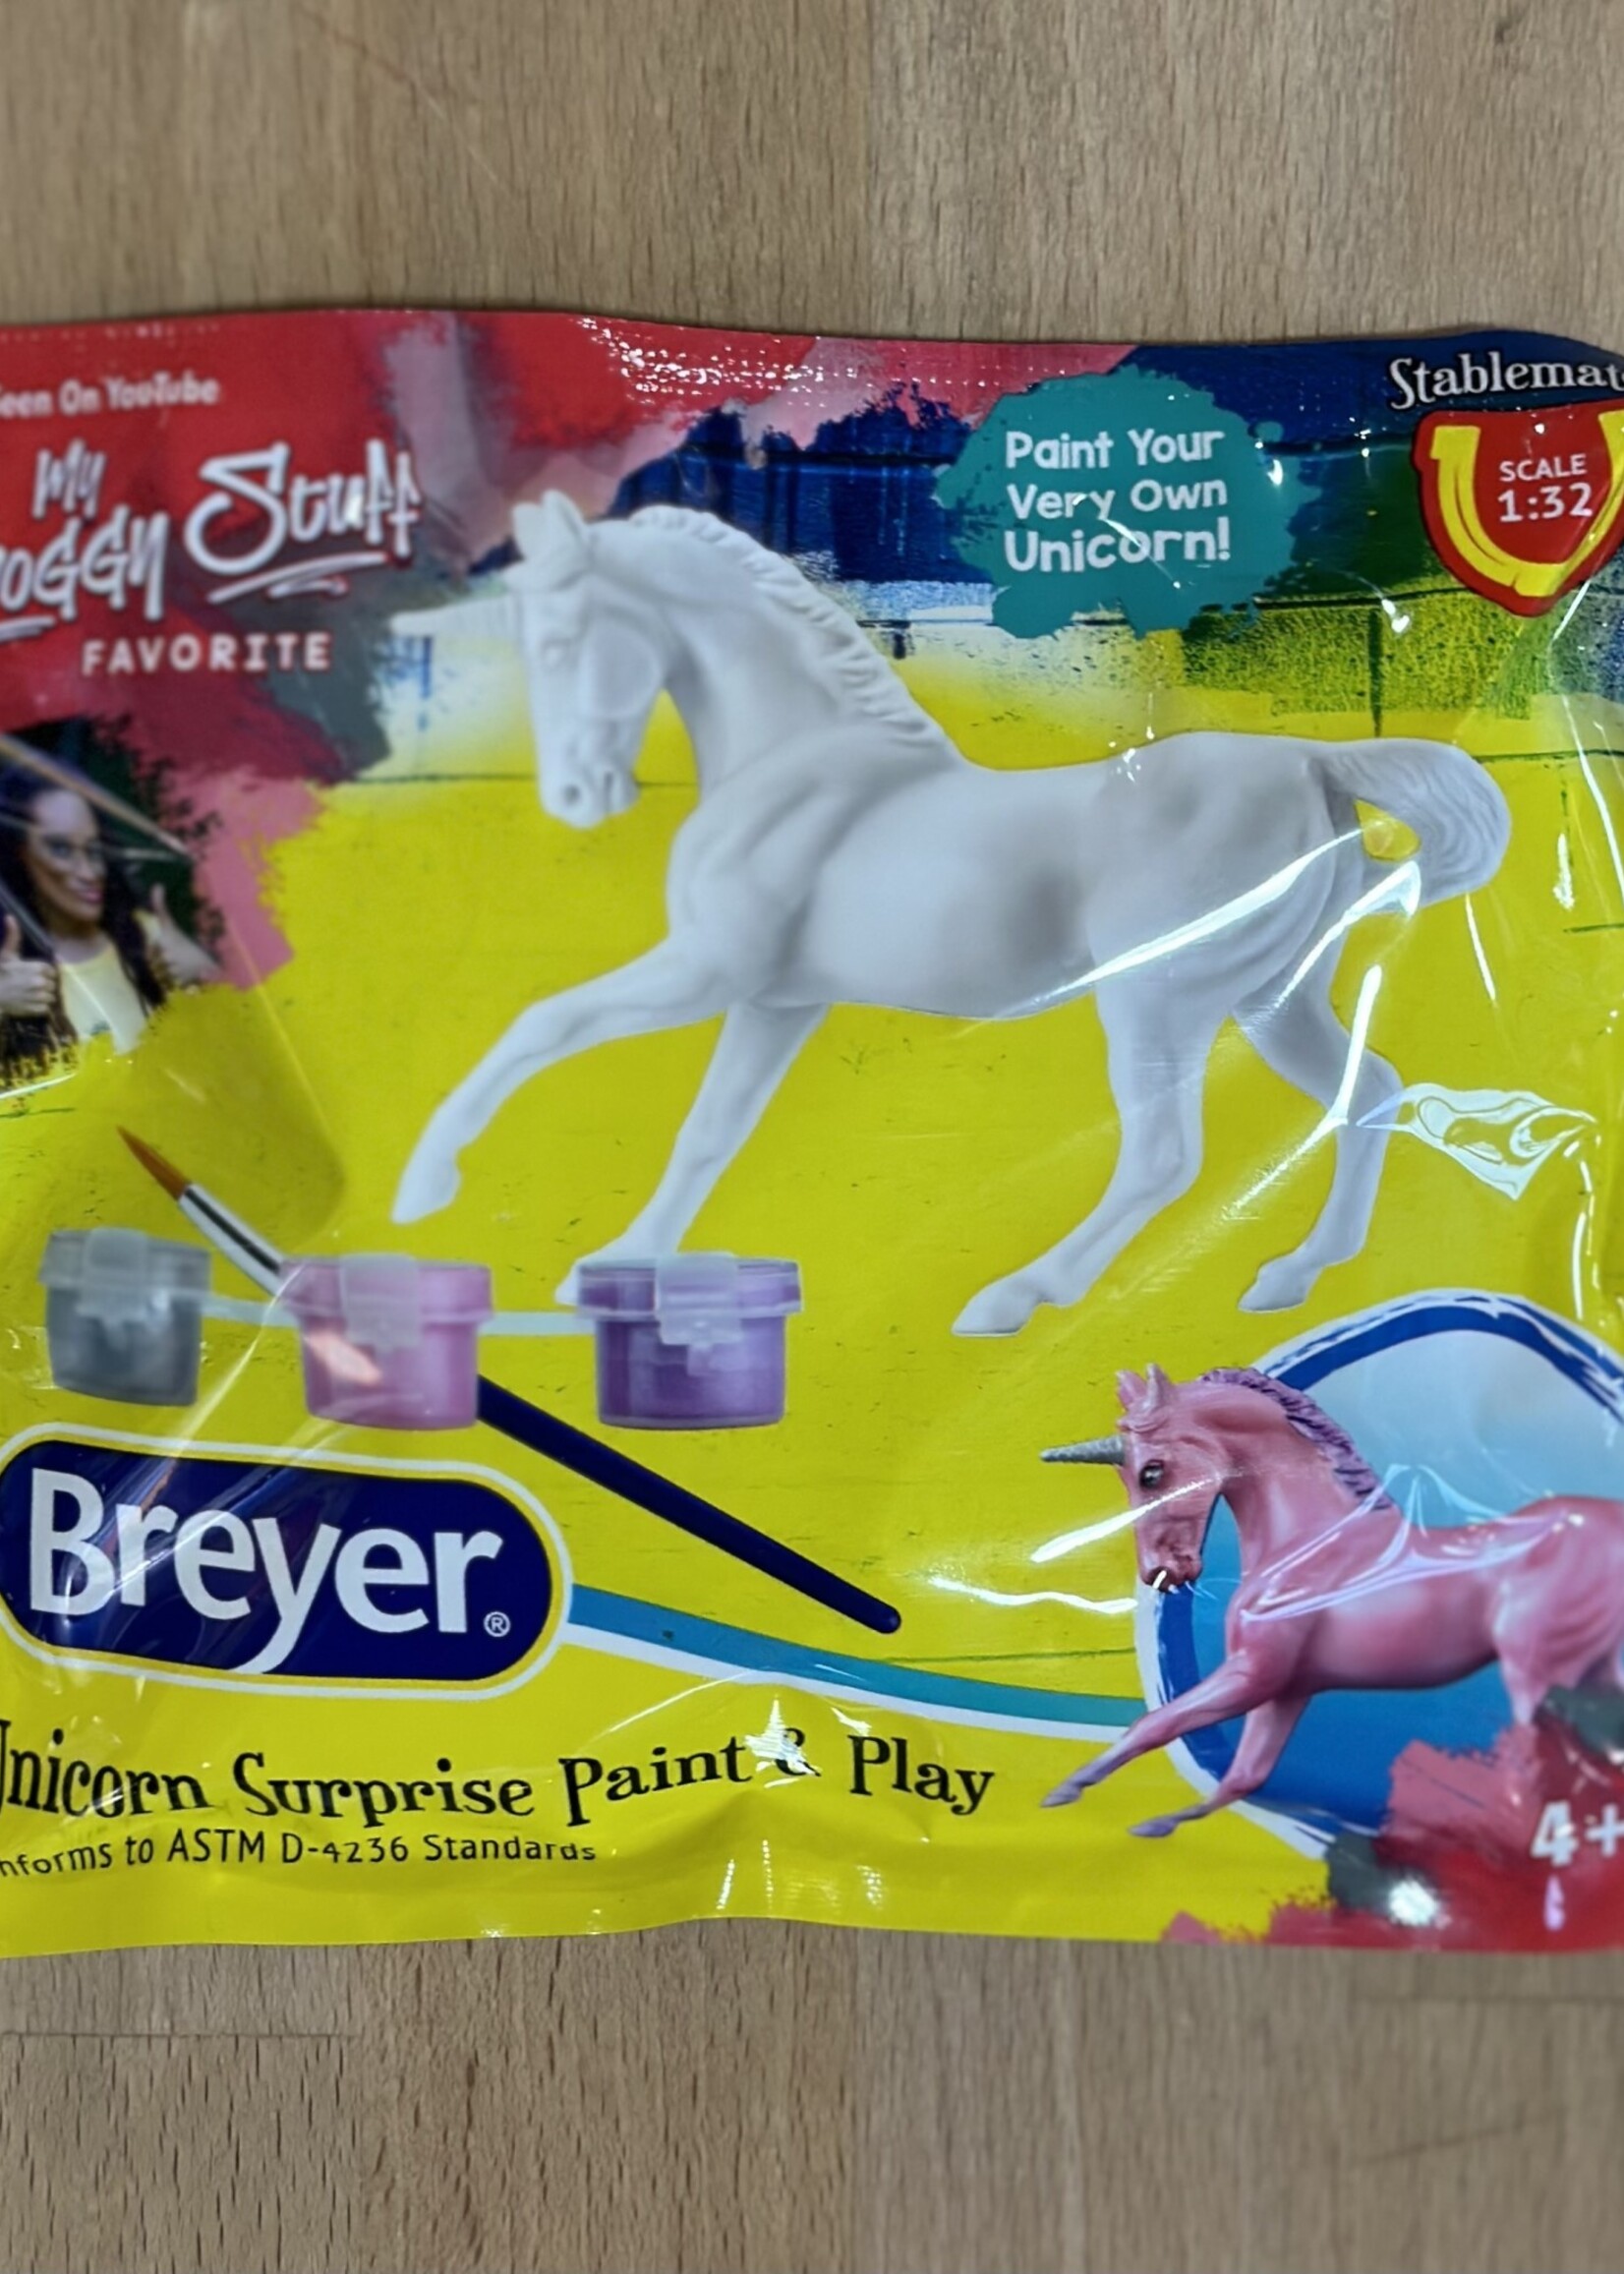 Unicorn Surprise Paint & Play